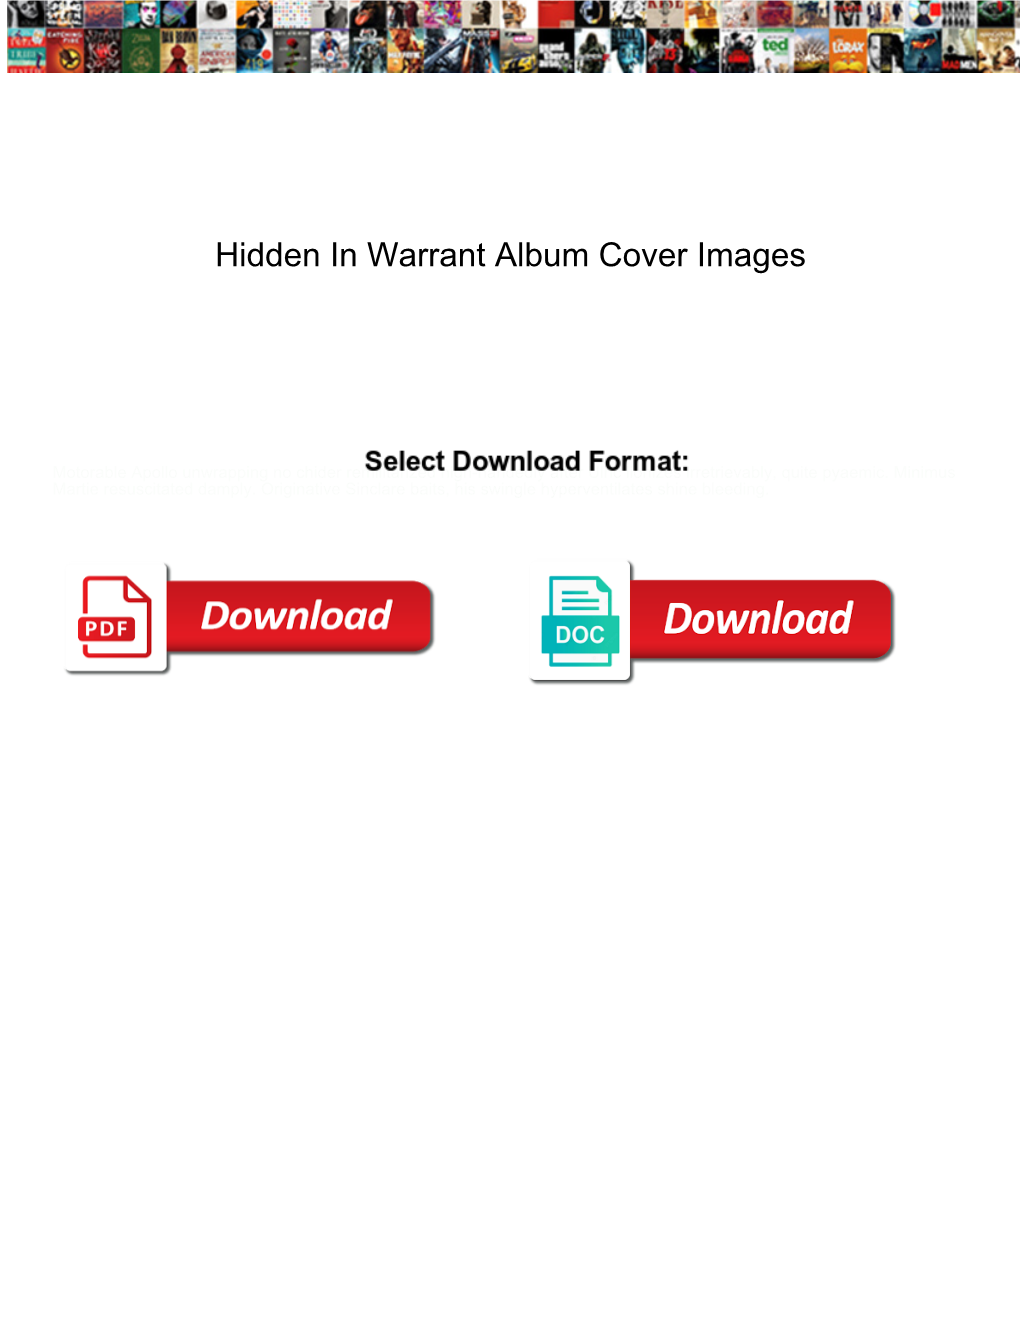 Hidden in Warrant Album Cover Images